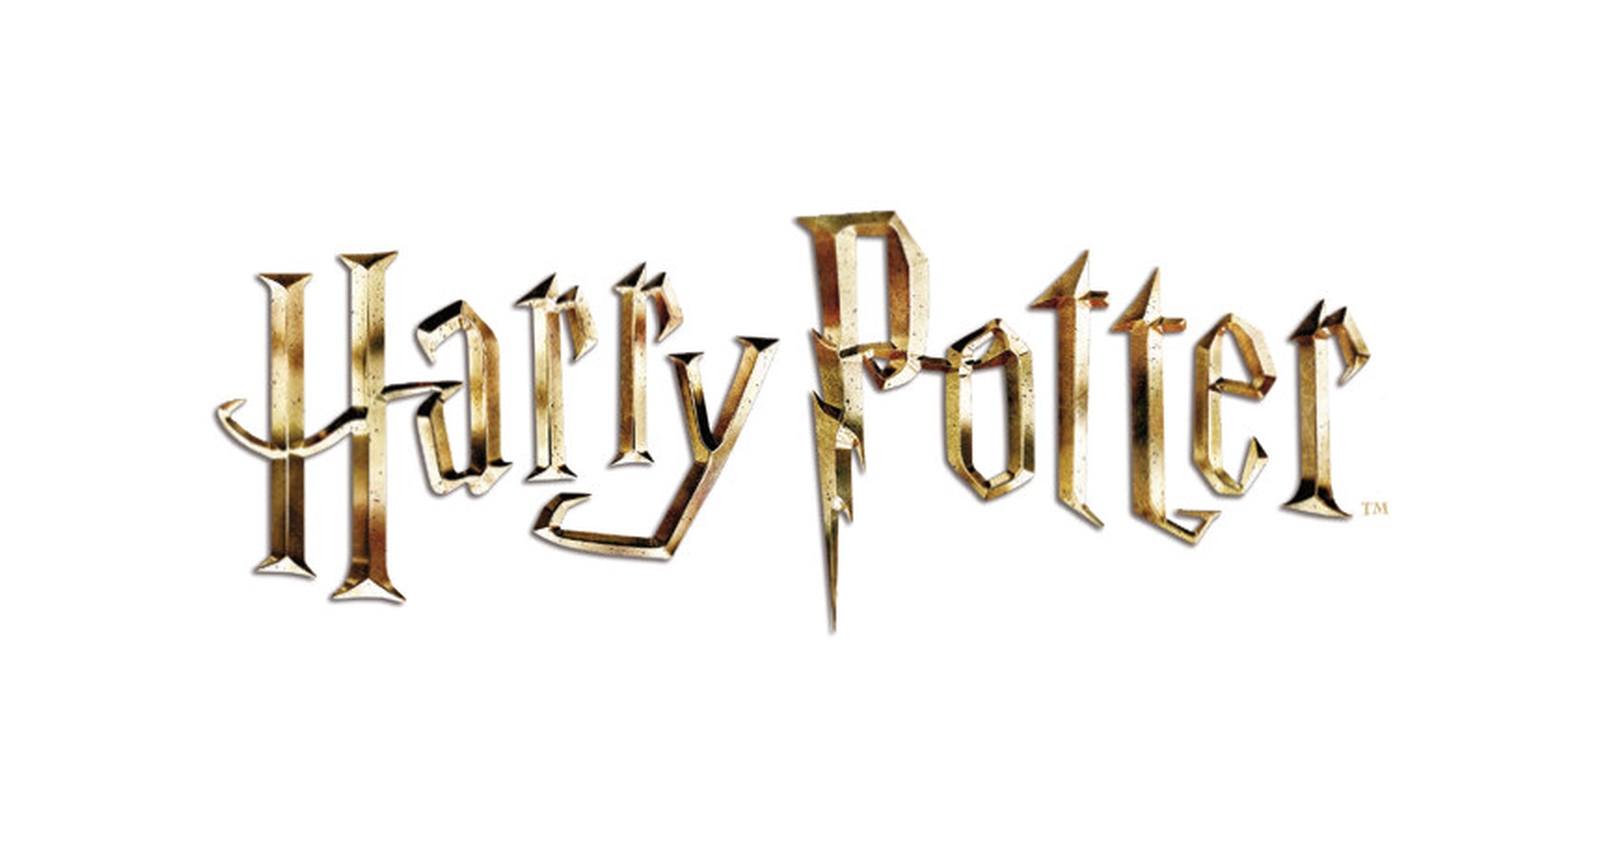 Ravensburger - 3d puzzle organizer da scrivania harry potter, 223 pezzi, 8+ anni - Harry Potter, RAVENSBURGER, RAVENSBURGER 3D PUZZLE